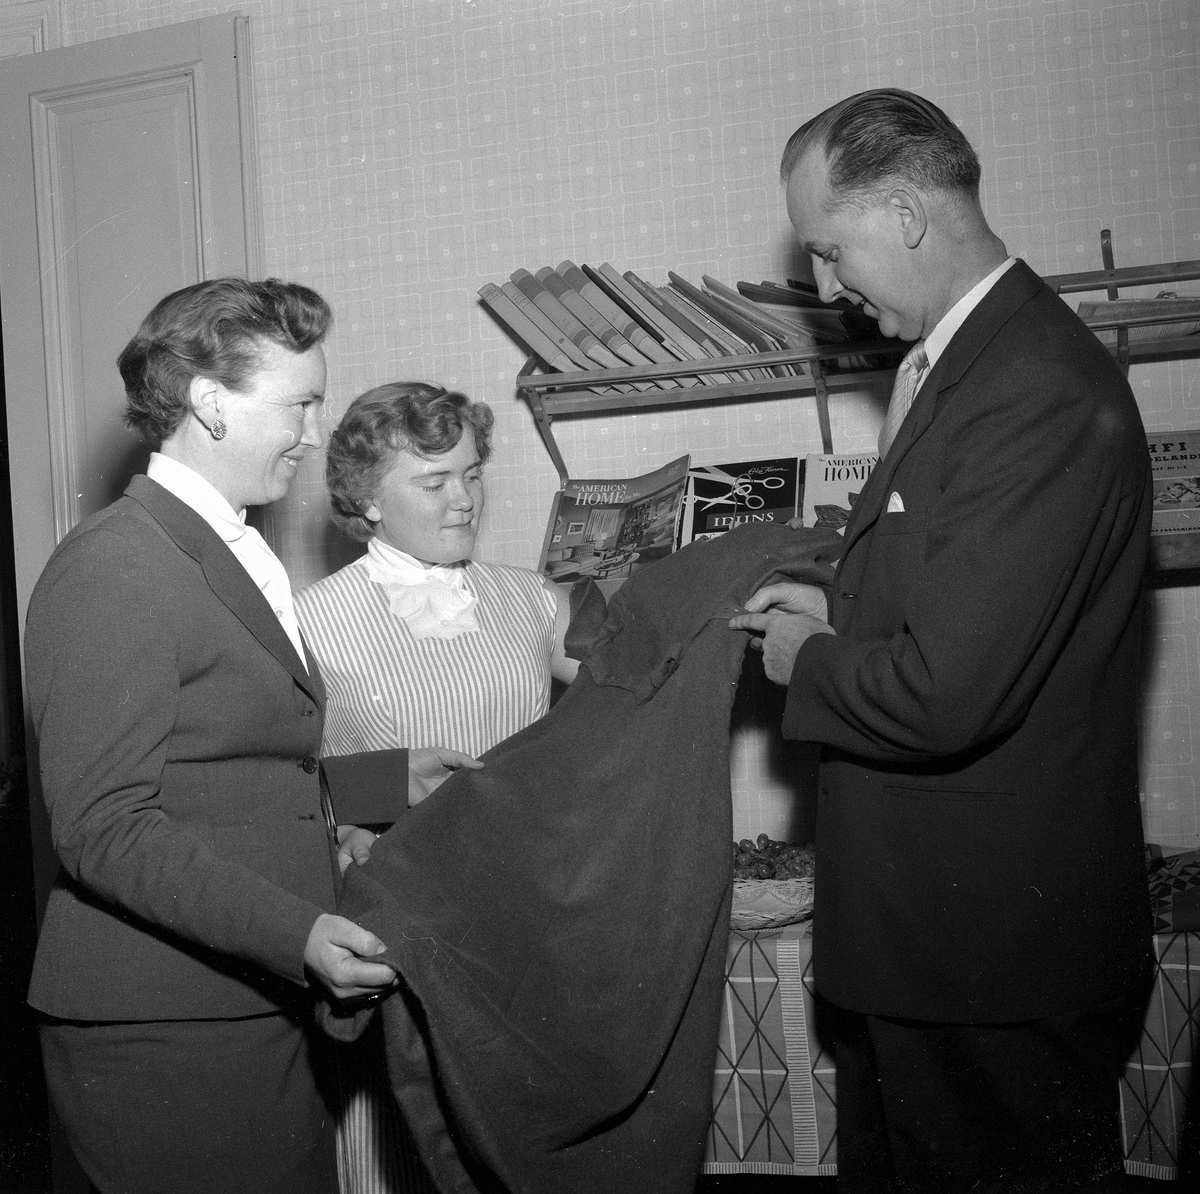 Husmoderskolans avslutning.
December 1956.